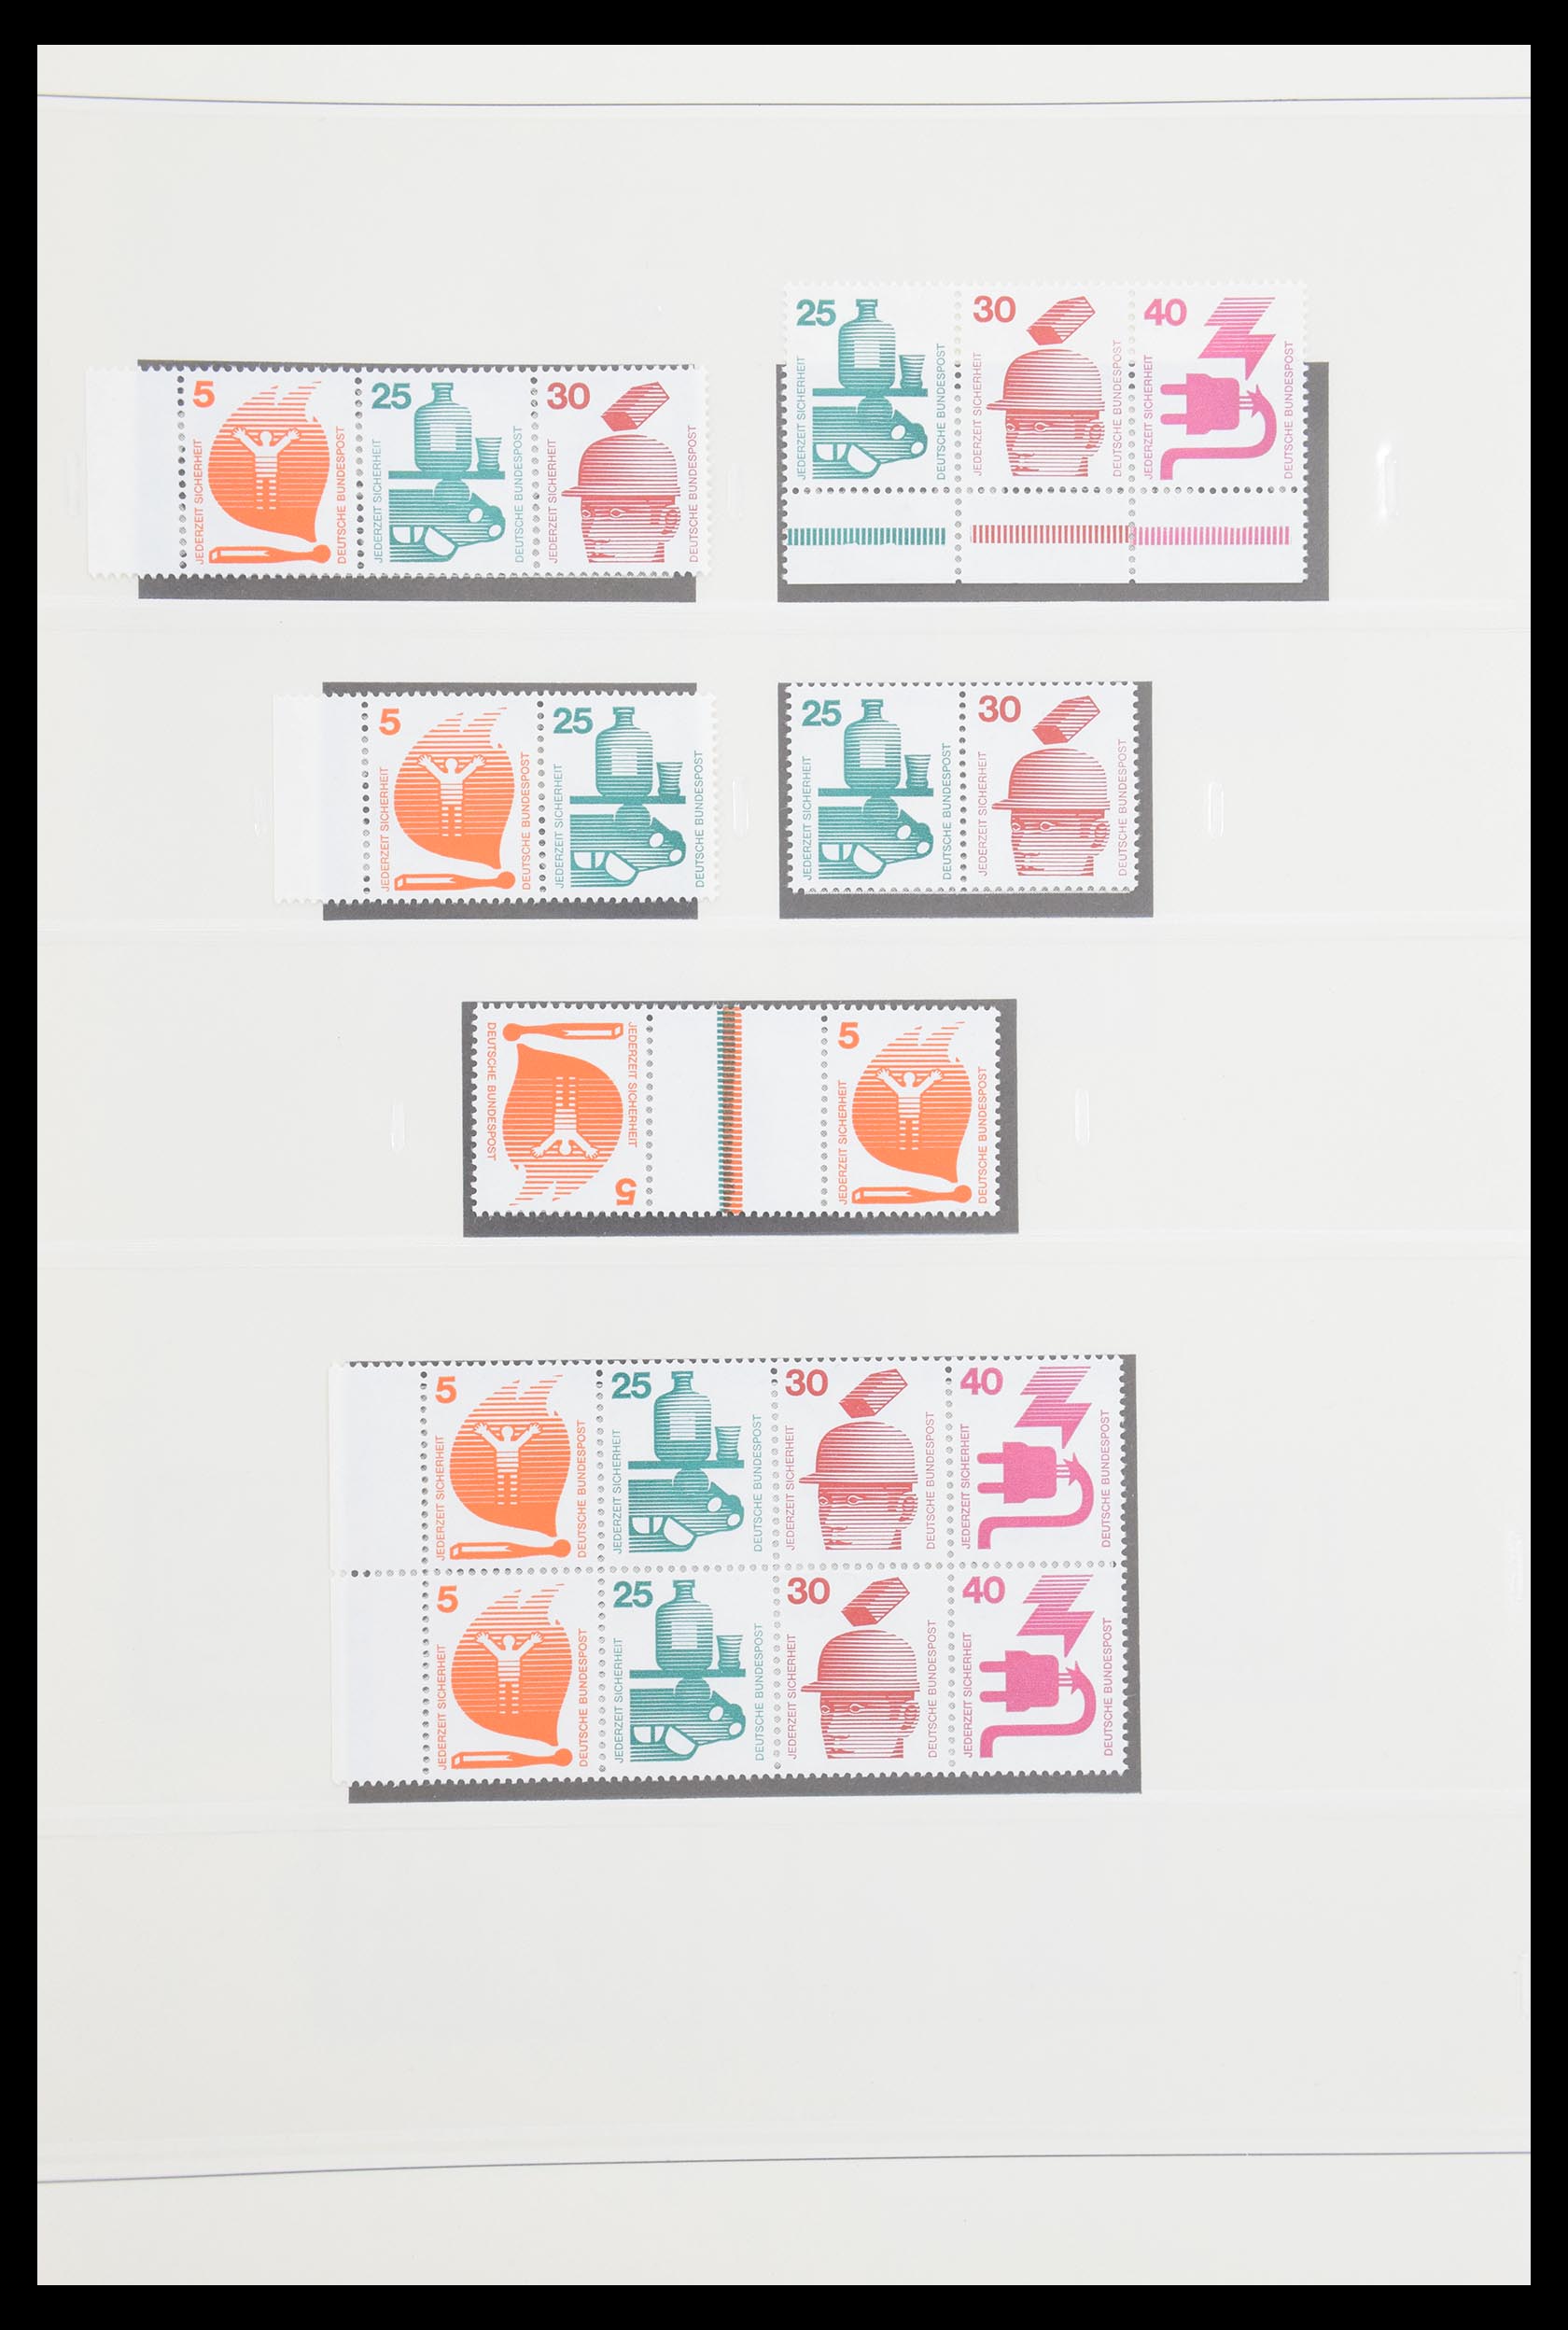 30605 038 - 30605 Bundespost combinations 1951-1974.